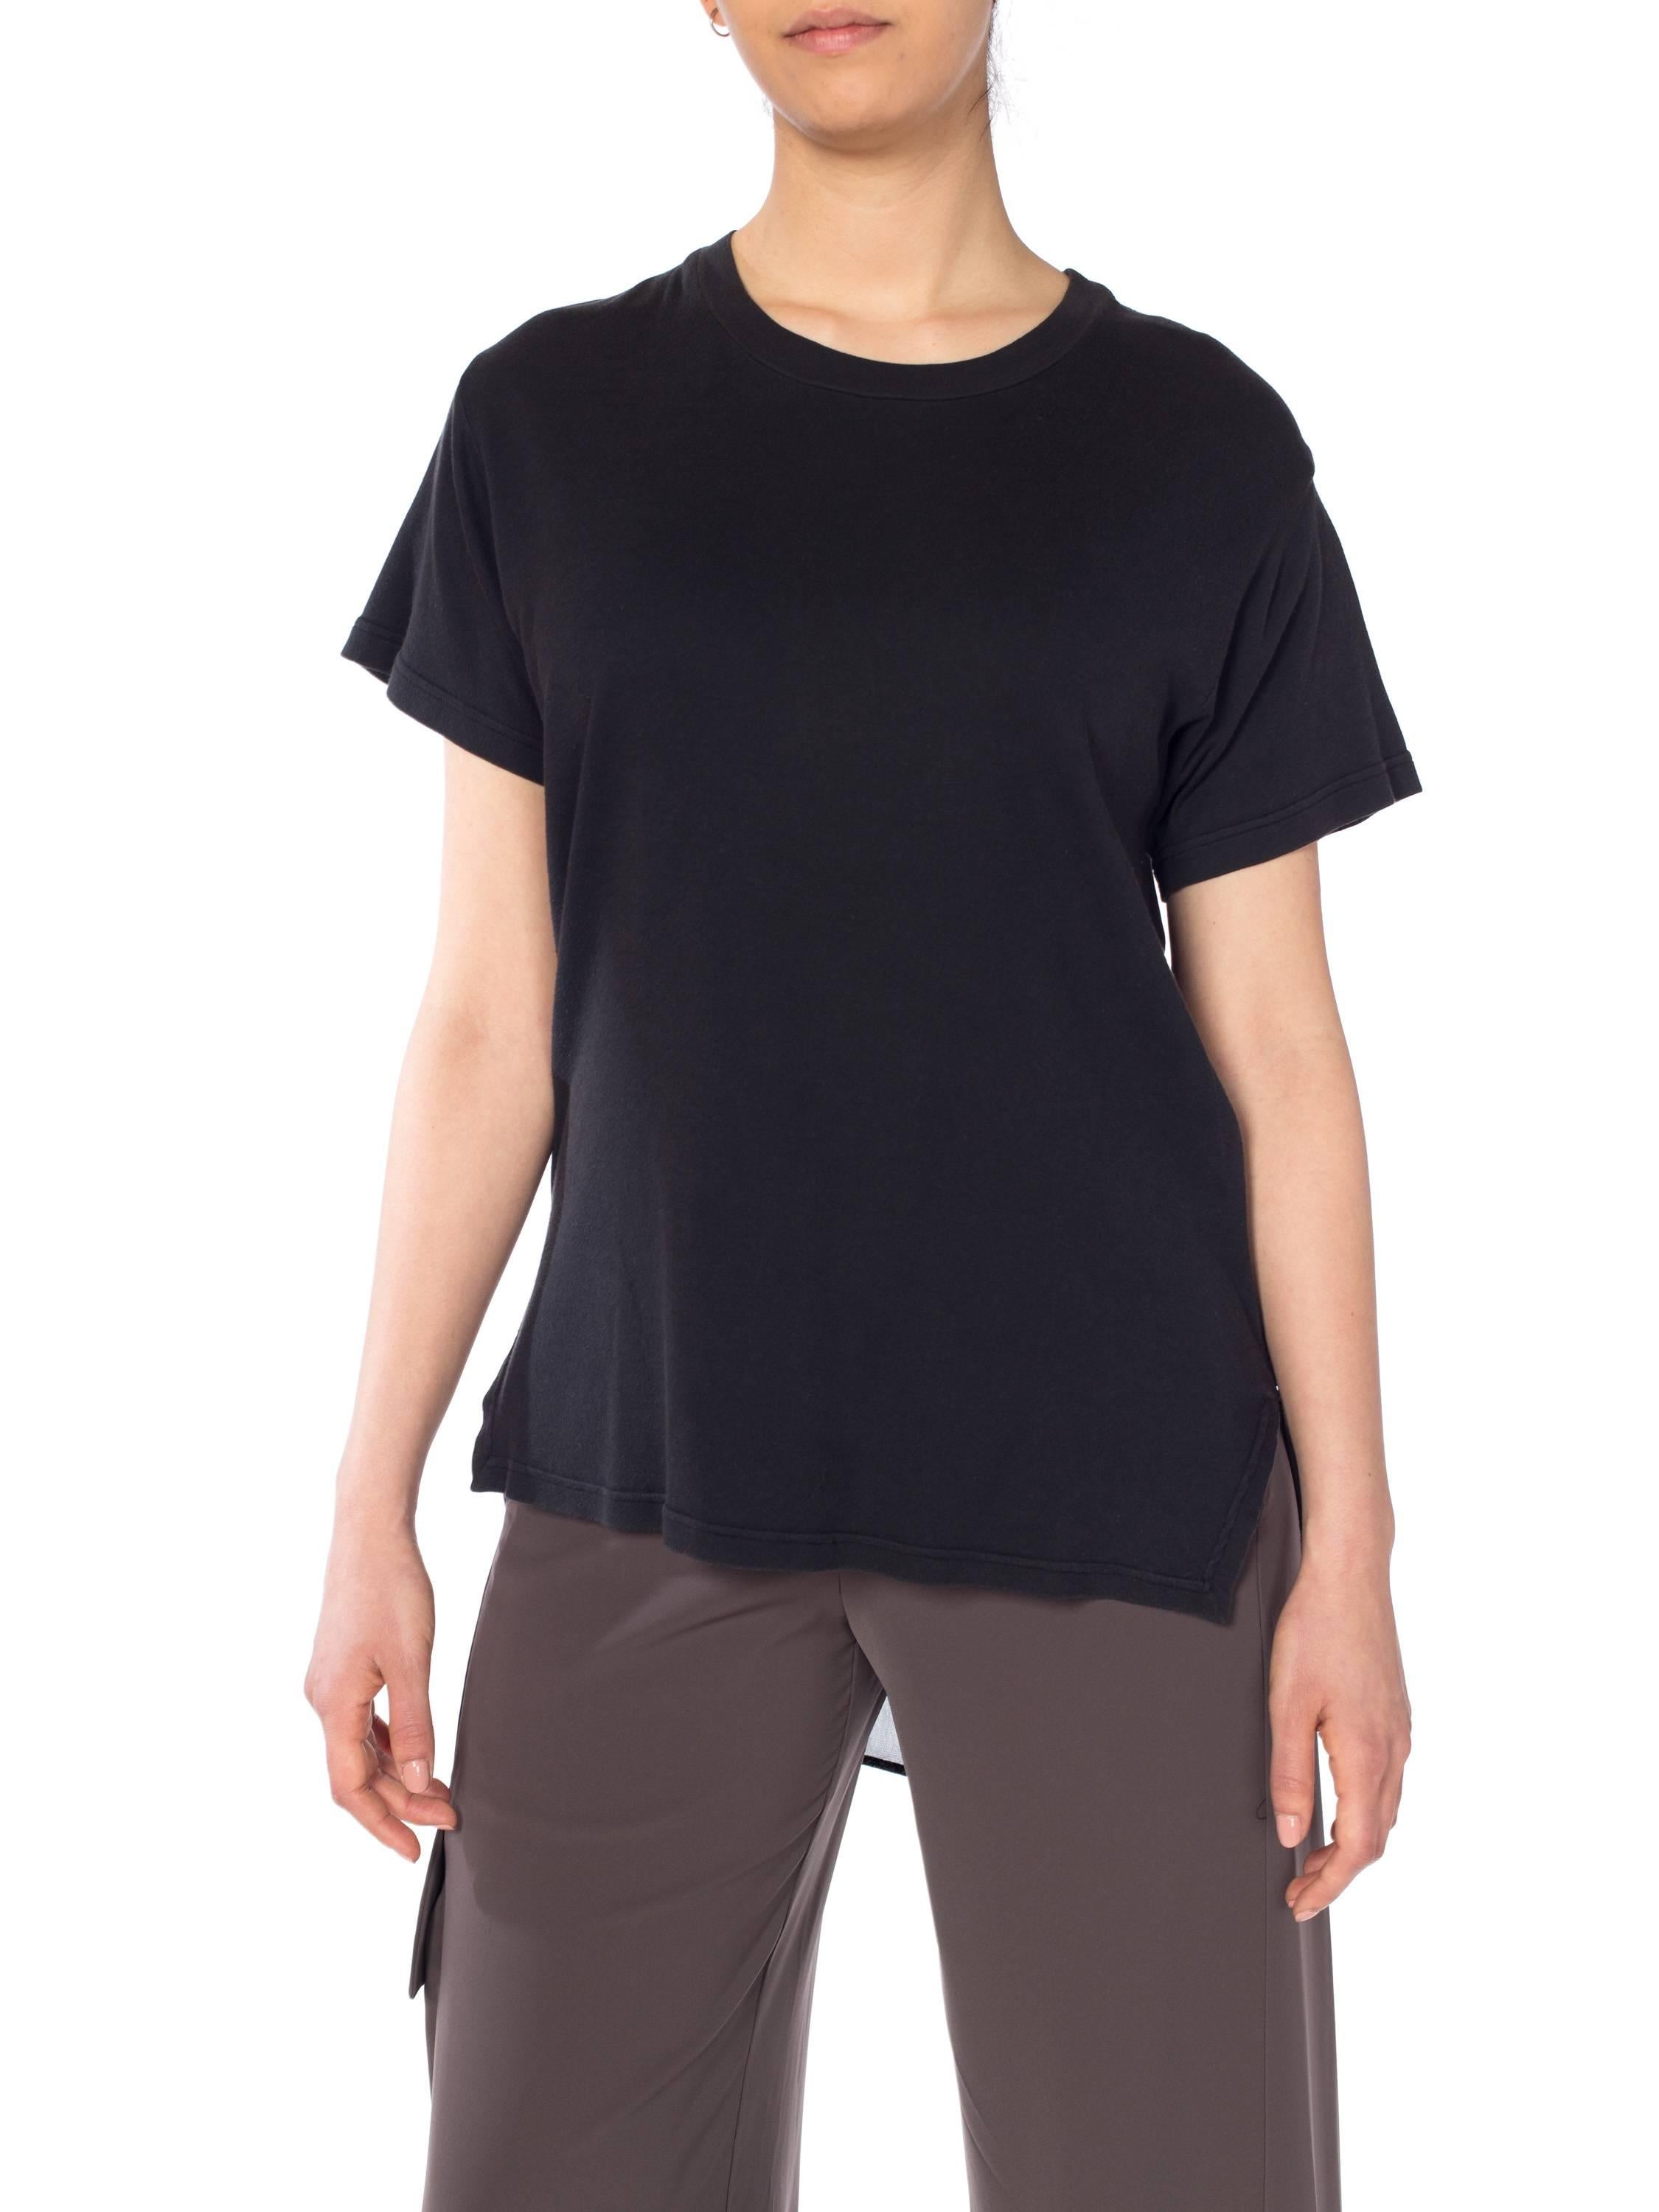 Women's 1990S MOSCHINO Black Cotton T-Shirt With Sheer Chiffon Back